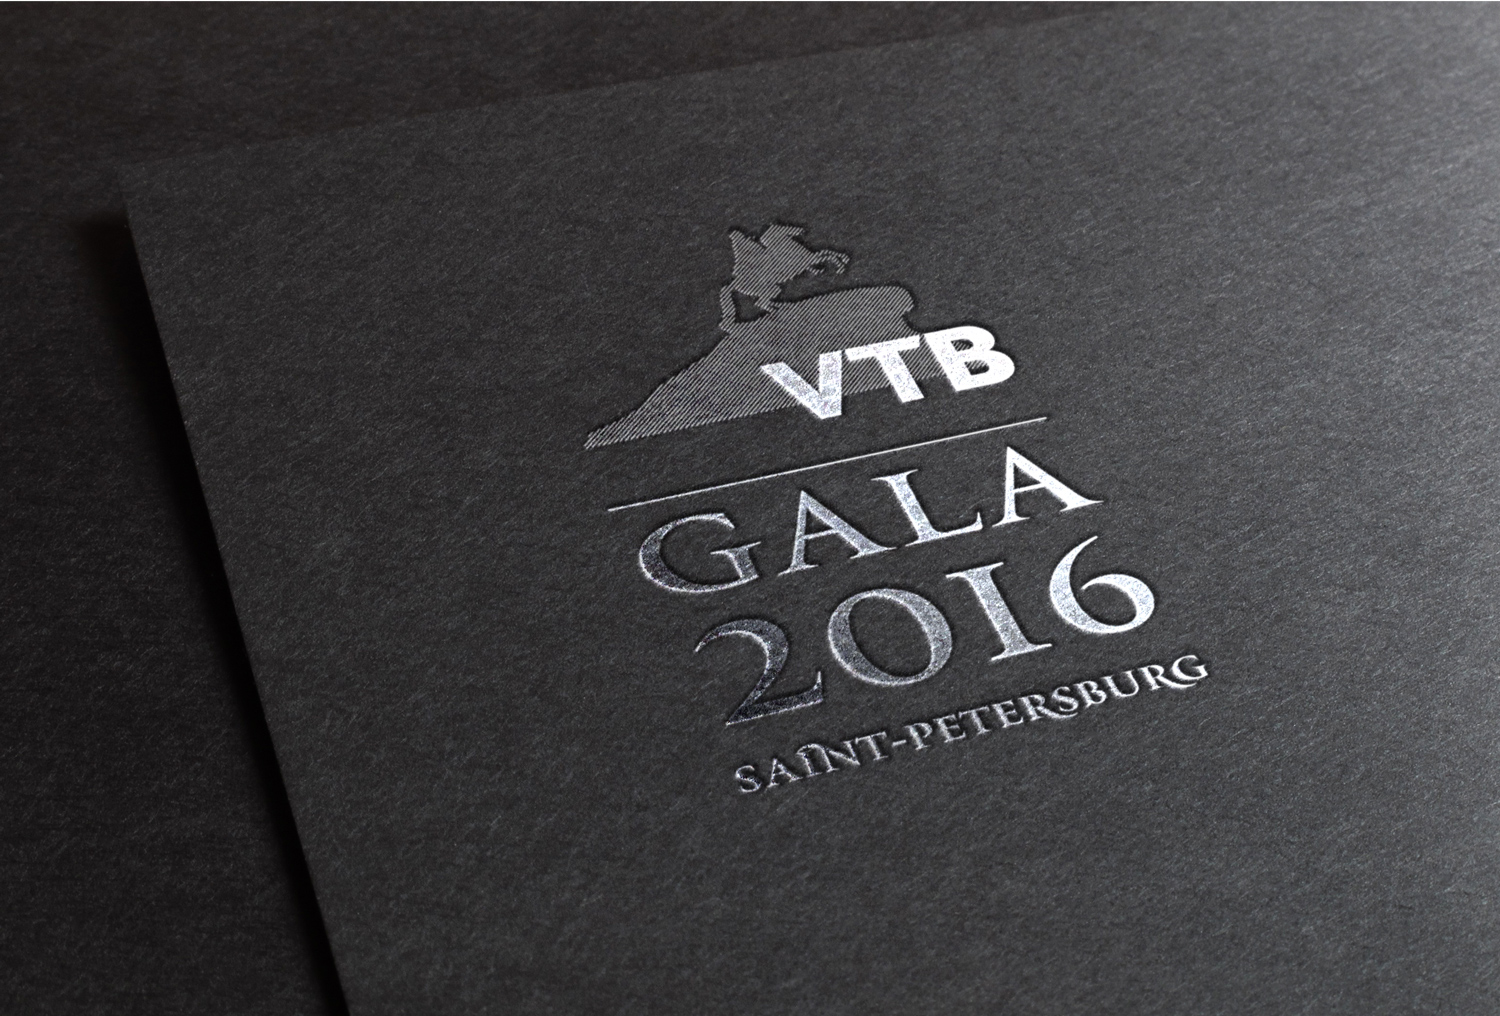 VTB GALA 2016  брендинг мероприятия